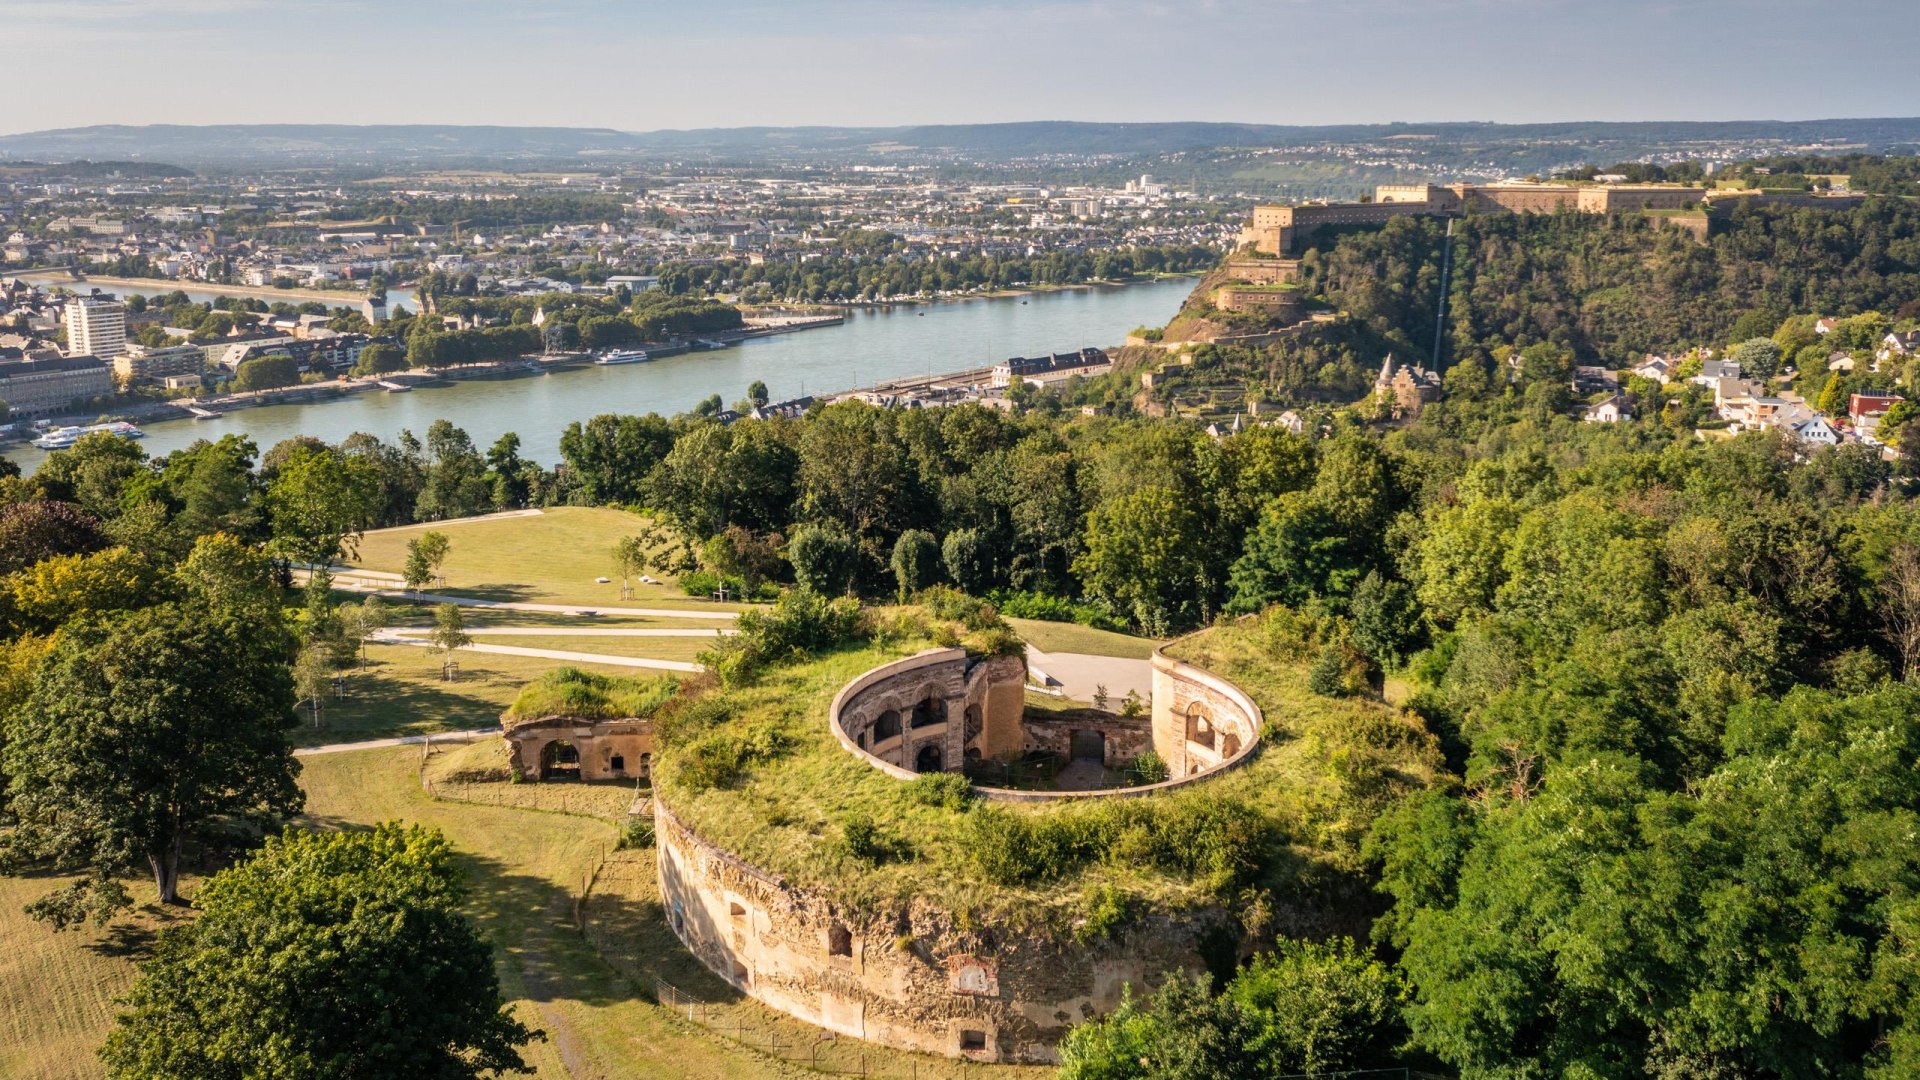 Fort Asterstein mit Festung im Hintergrund | © Koblenz-Touristik GmbH / Dominik Ketz